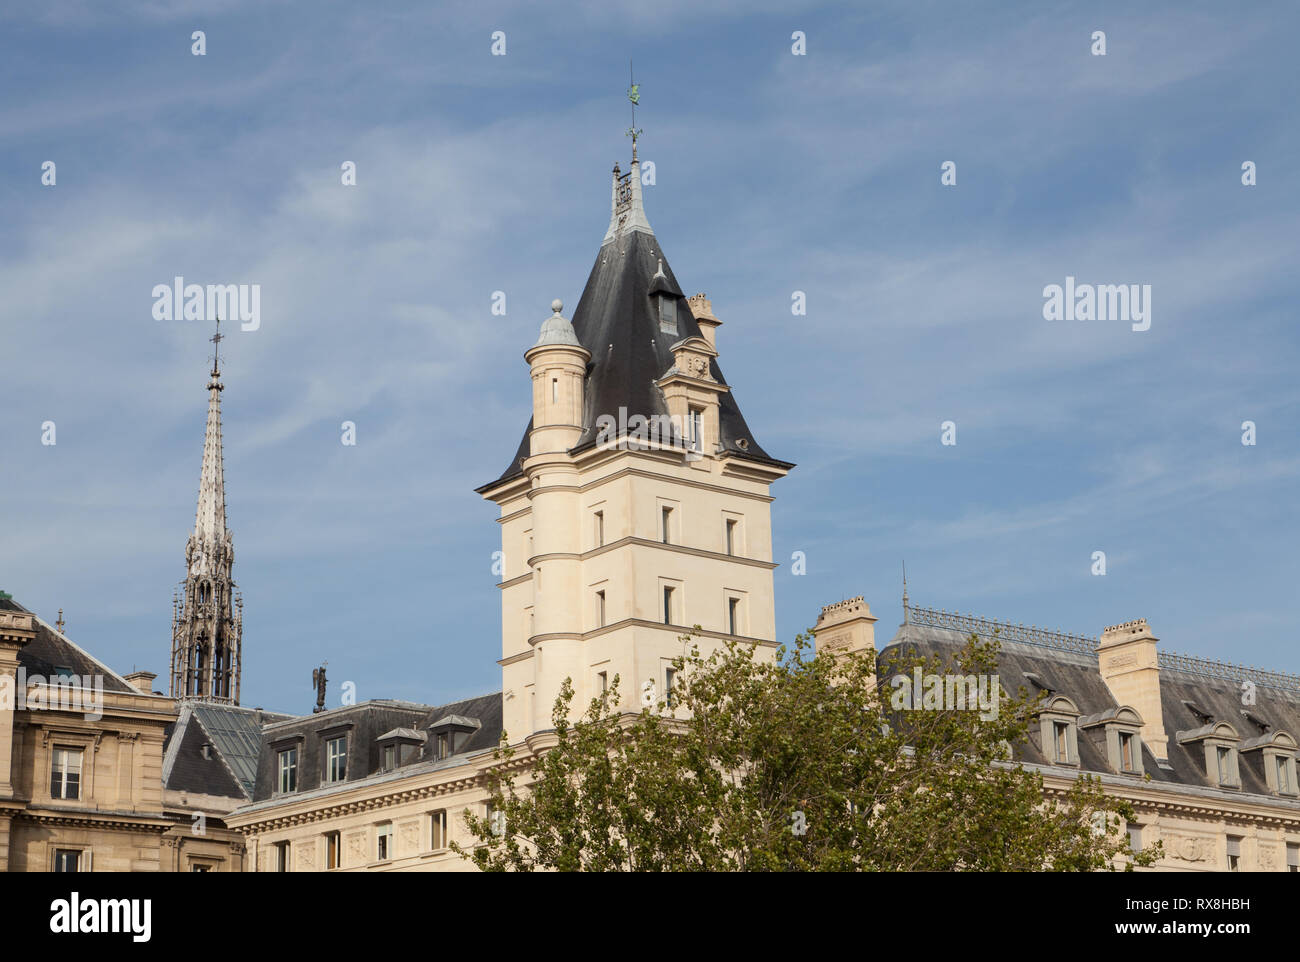 Tower of Palais de Justice, quai des Orfèvres, Paris, France. Stock Photo